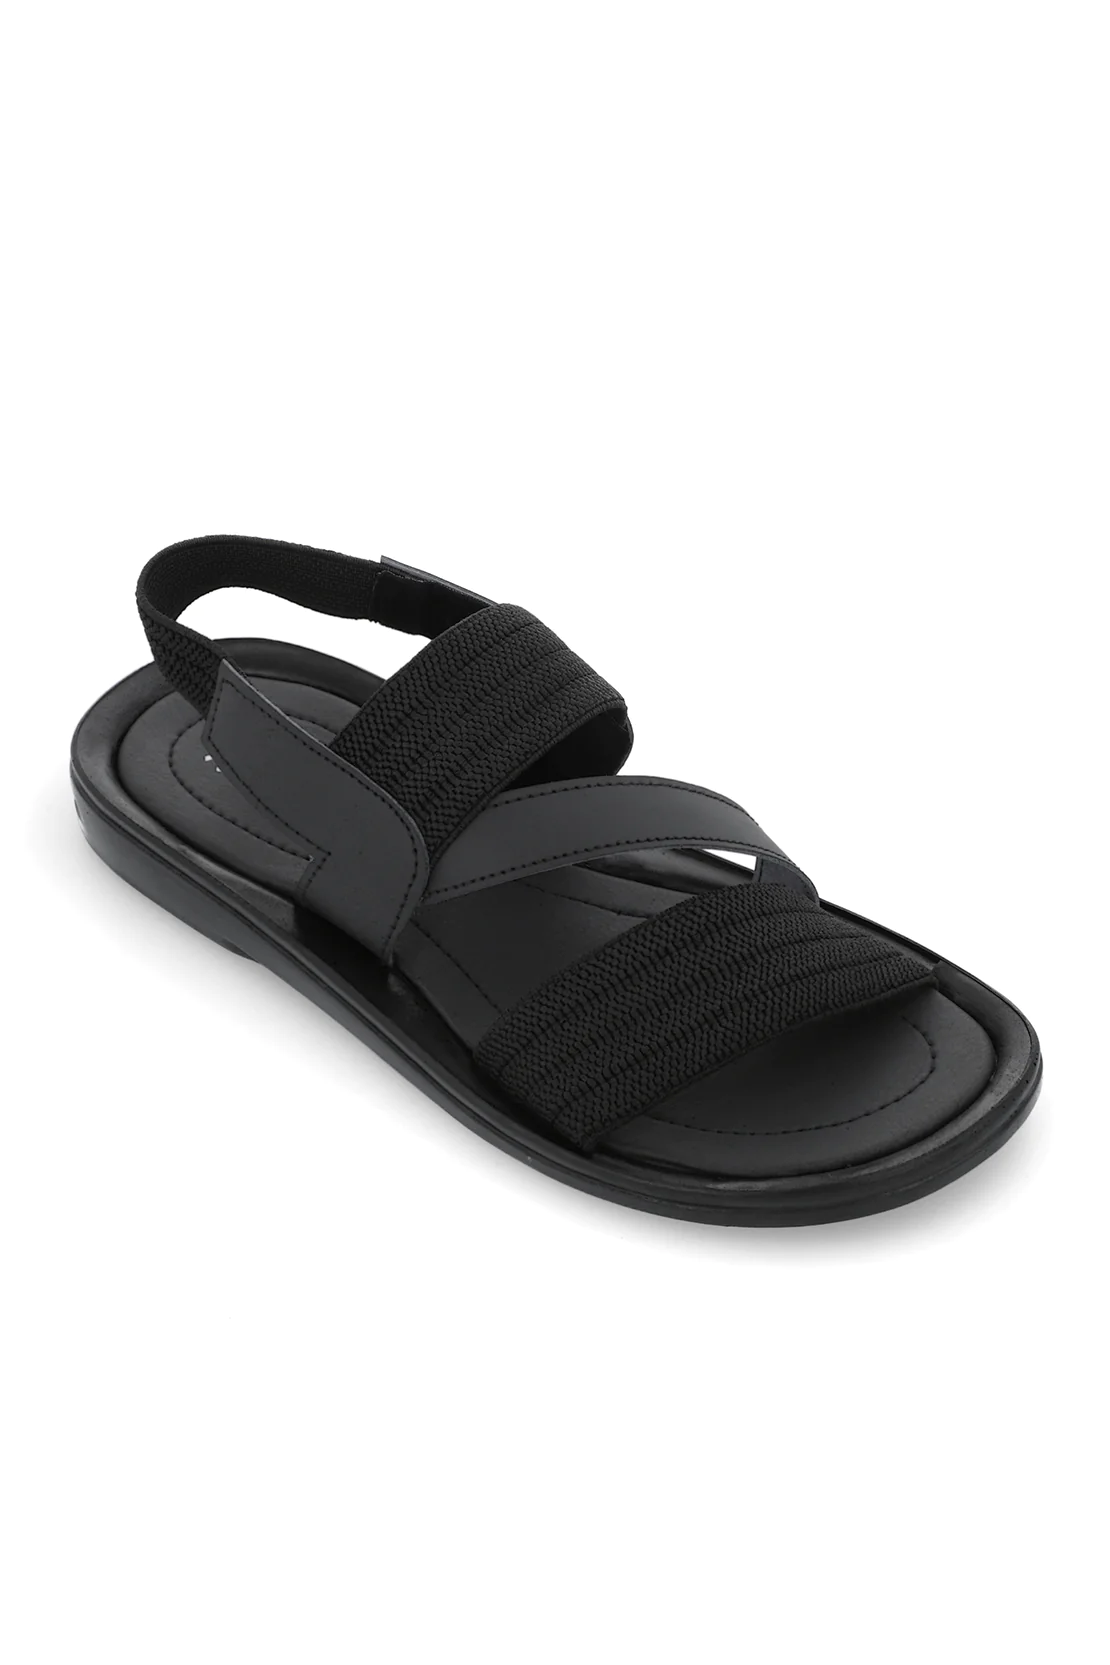 Black-Sandal-G00761-002